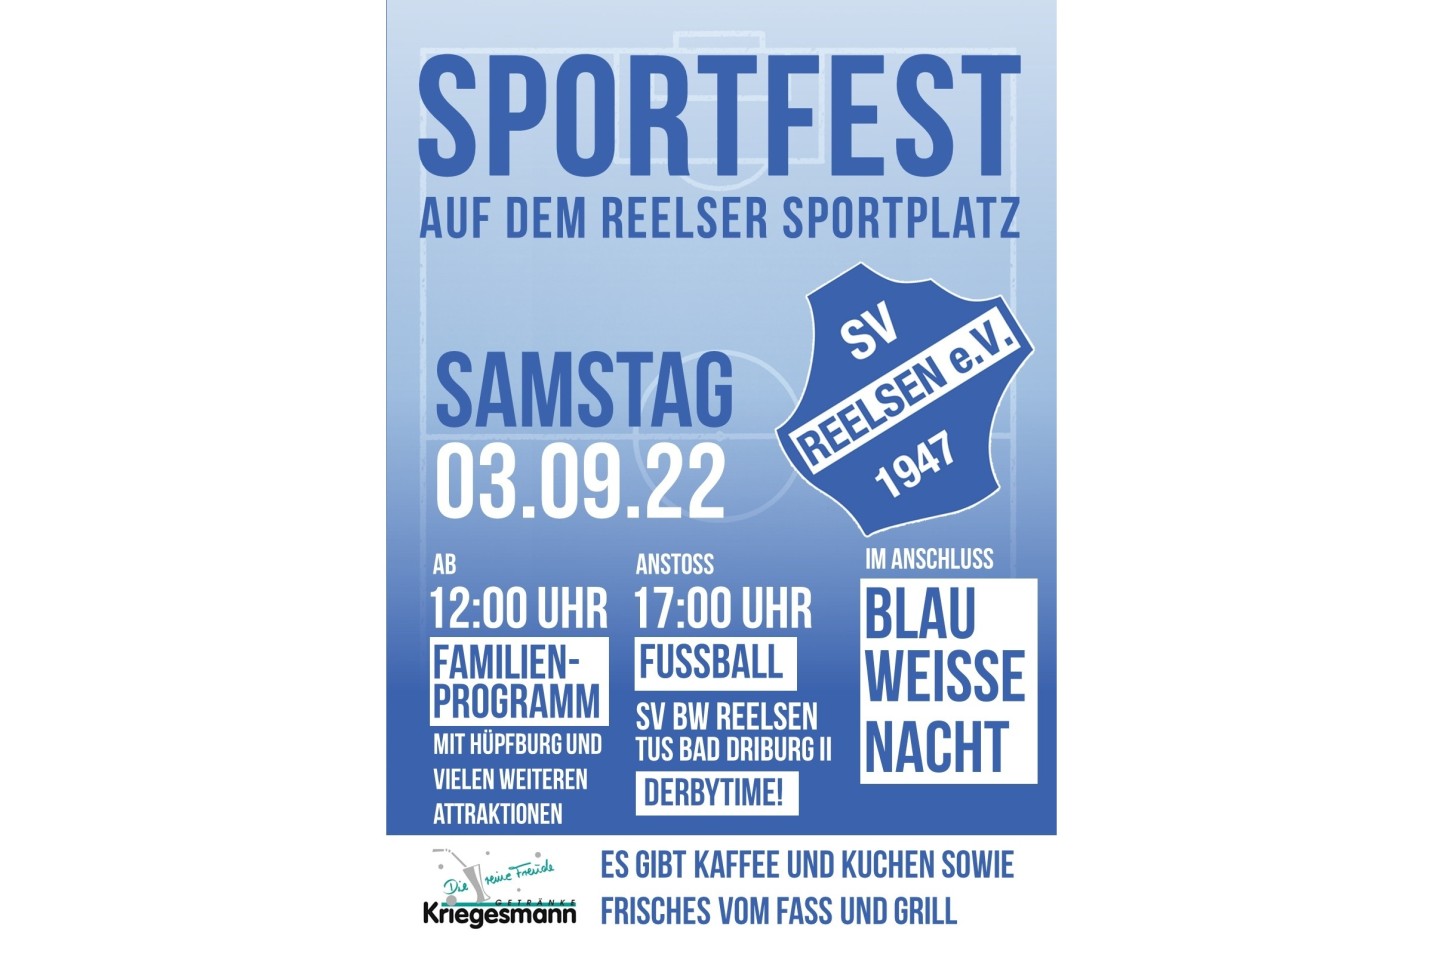 Sportfest auf dem Reelser Sportplatz am Samstag, den 03.09.2022